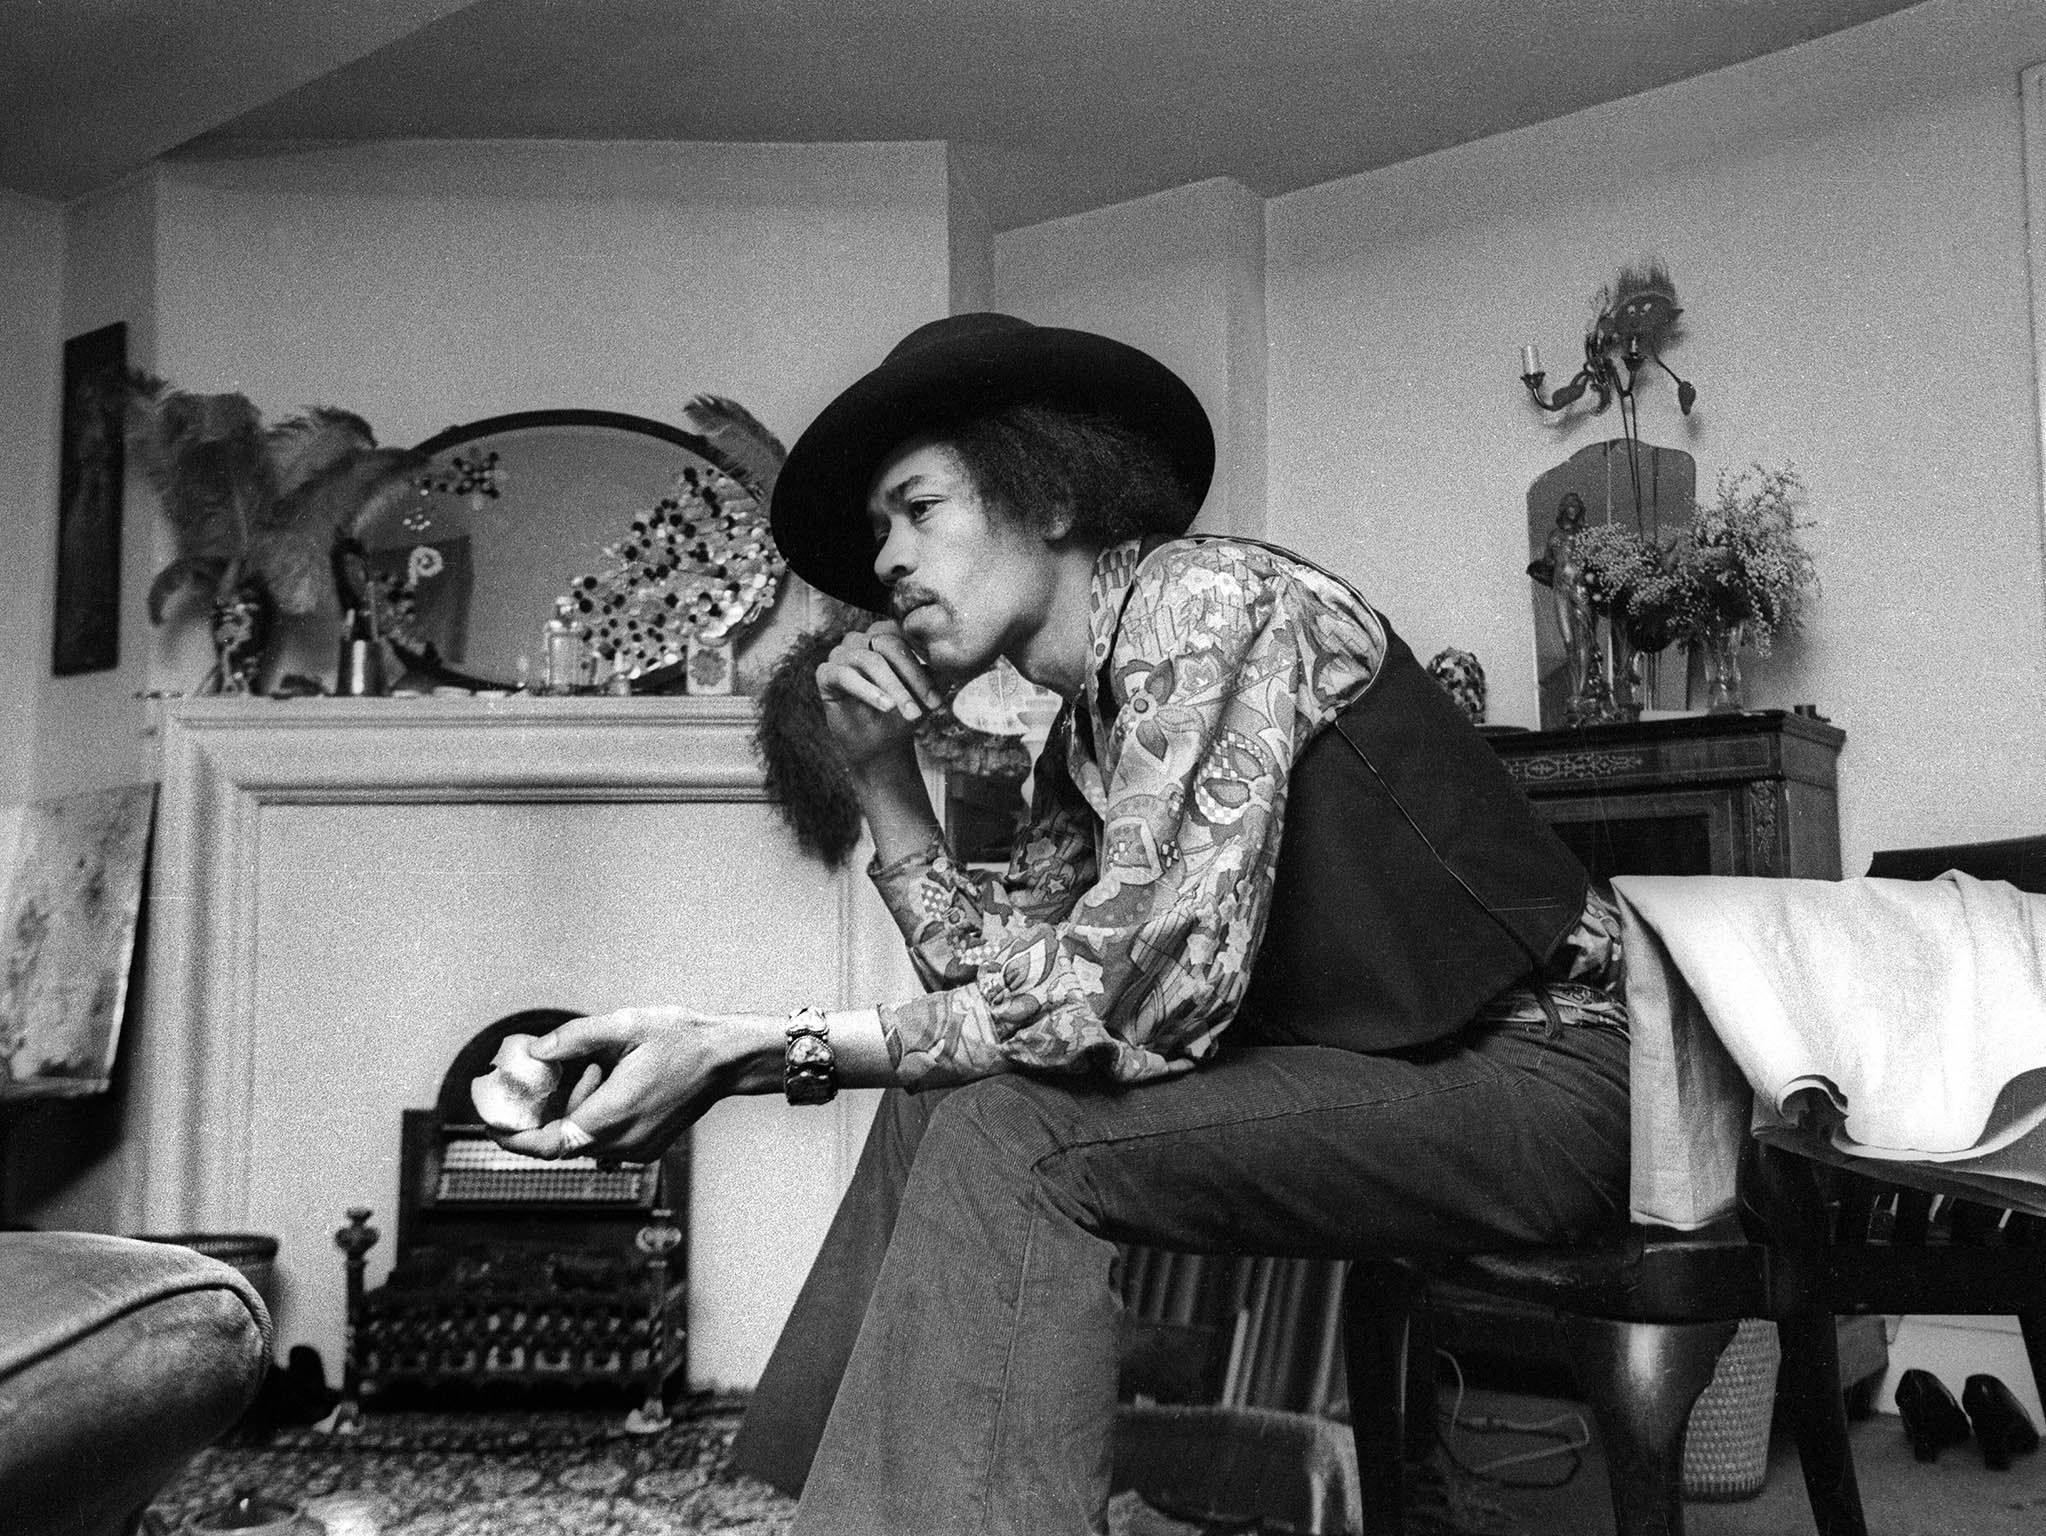 Jimi Hendrix at 23 Brook Street, 1969